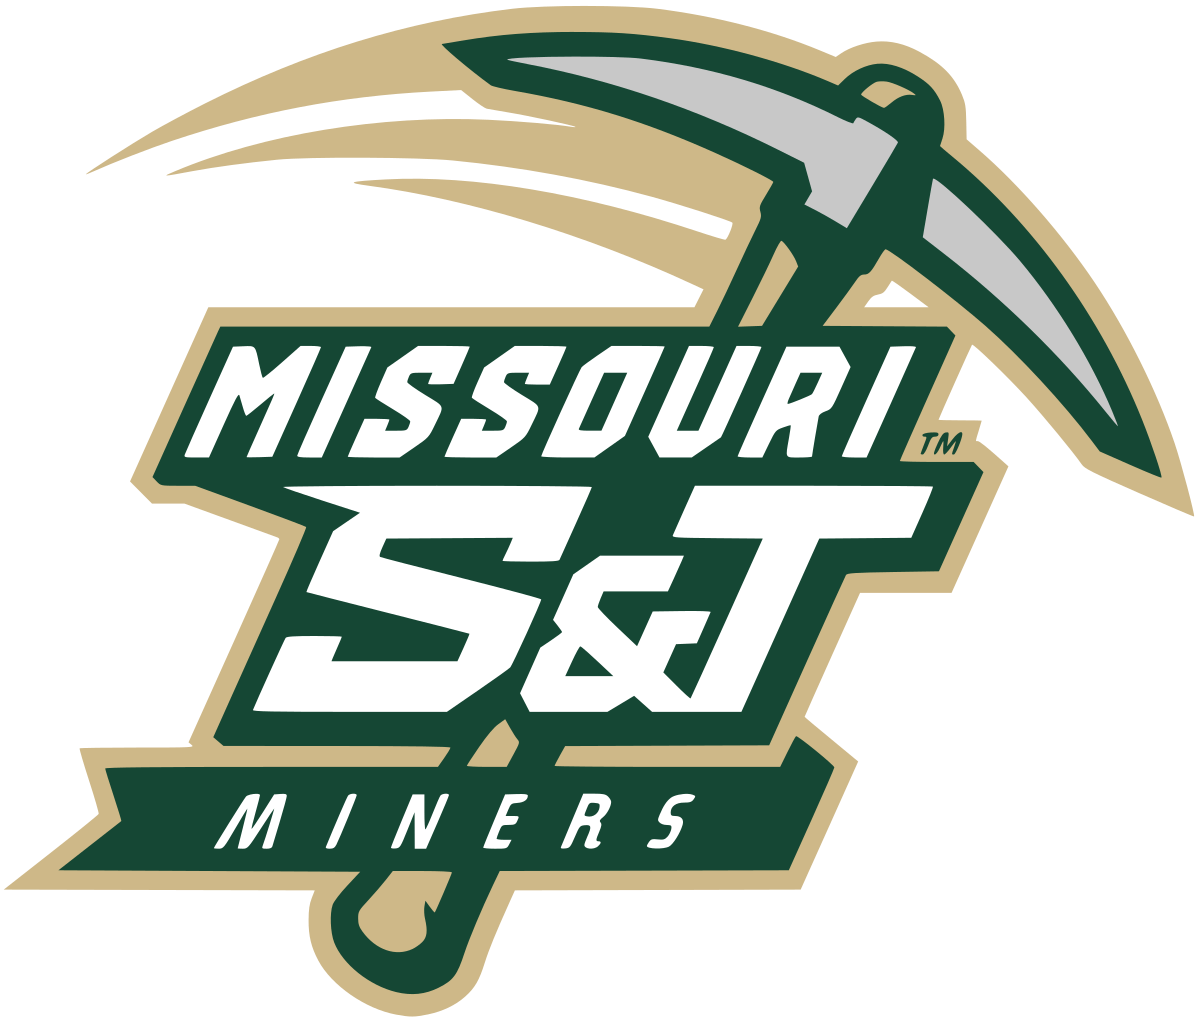 Miners Logo - Missouri S&T Miners